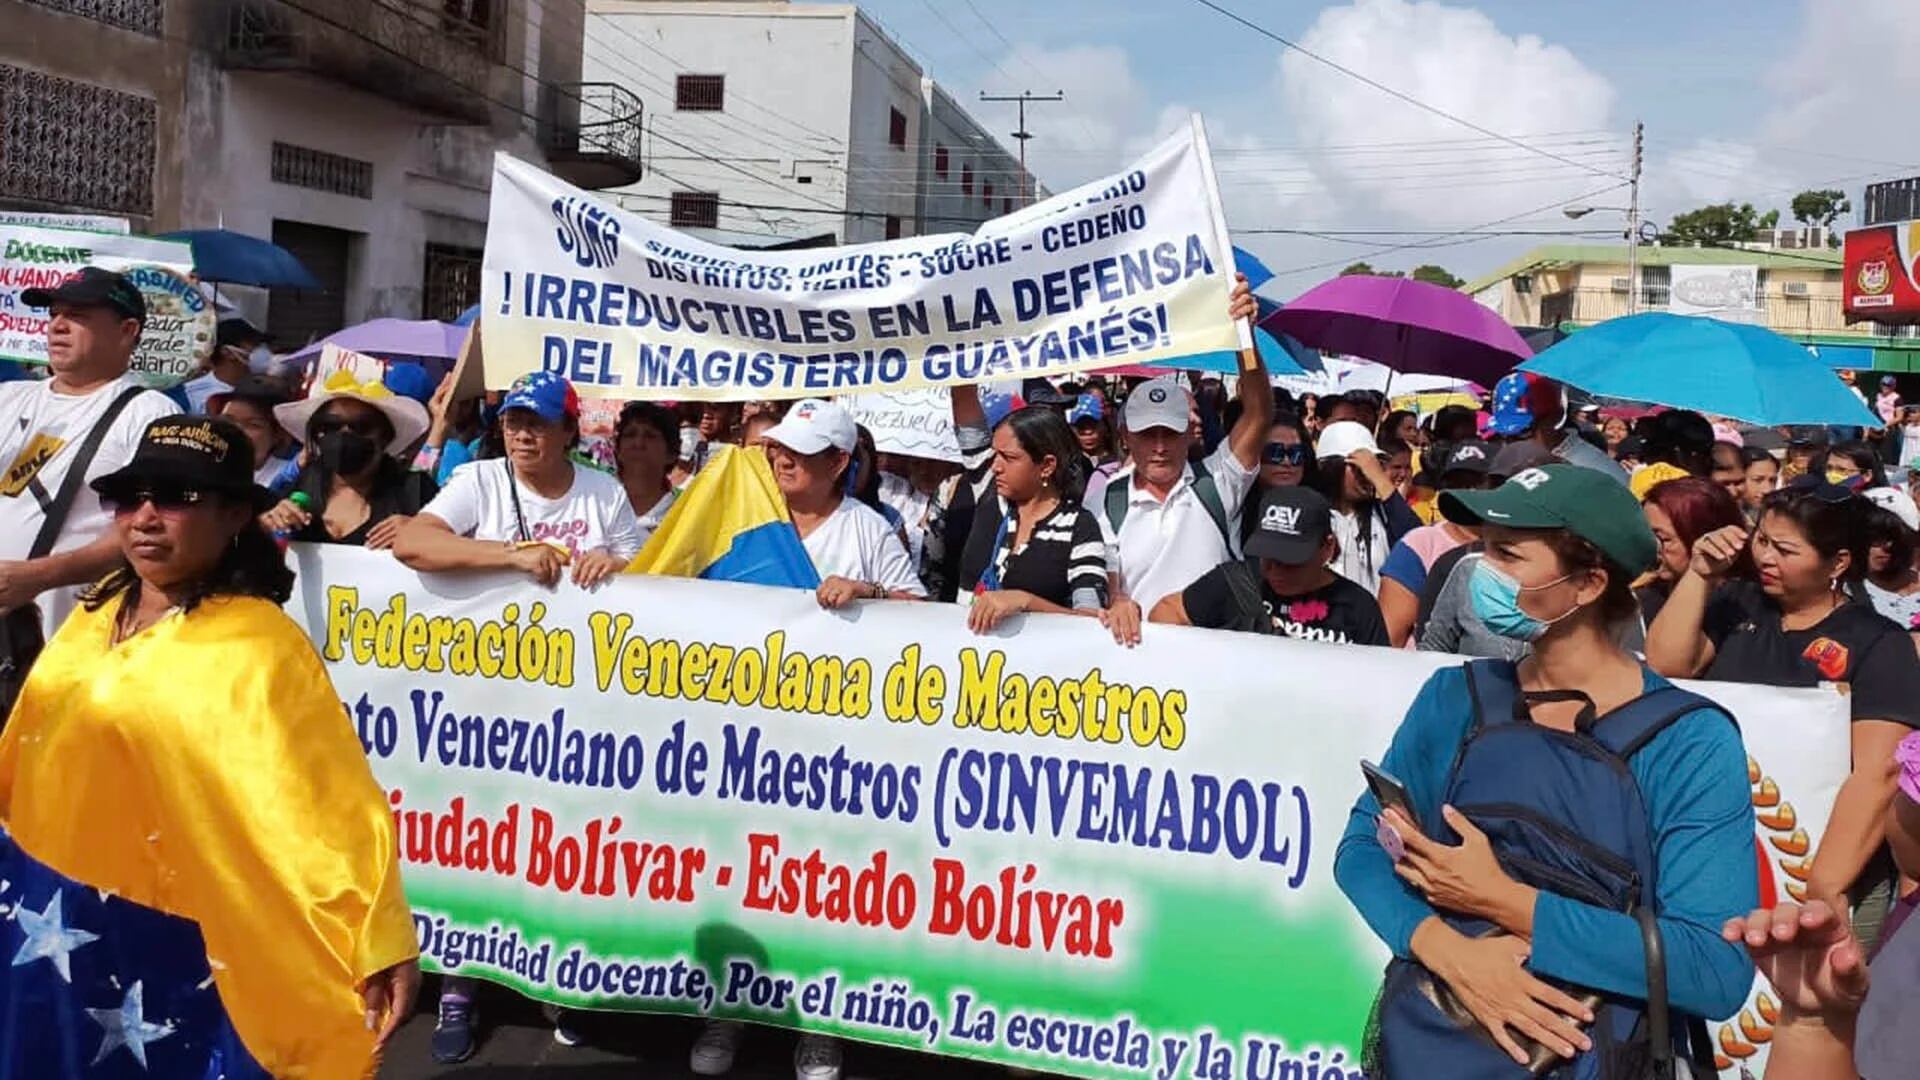 Protestas en Venezuela: los maestros exigen que se reanude la negociación para mejorar los salarios